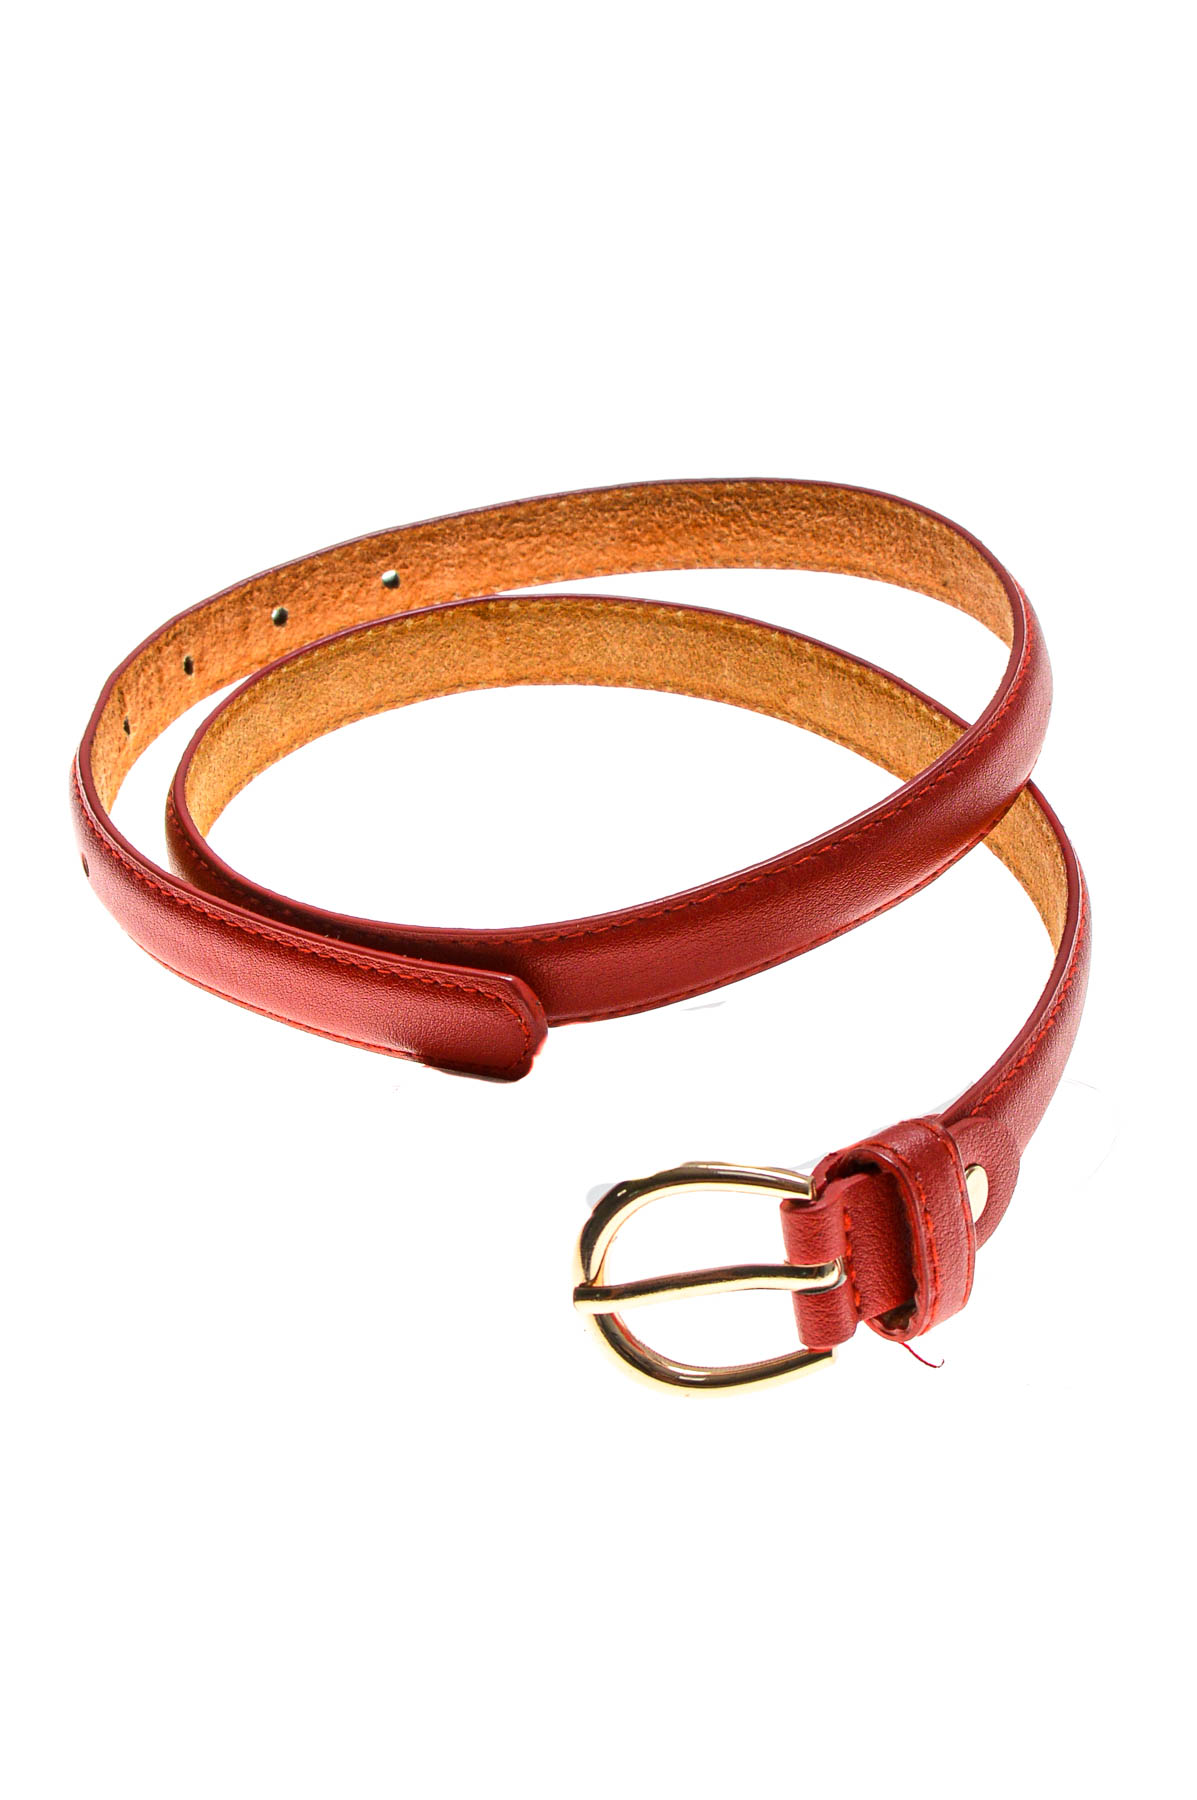 Ladies's belt - 1